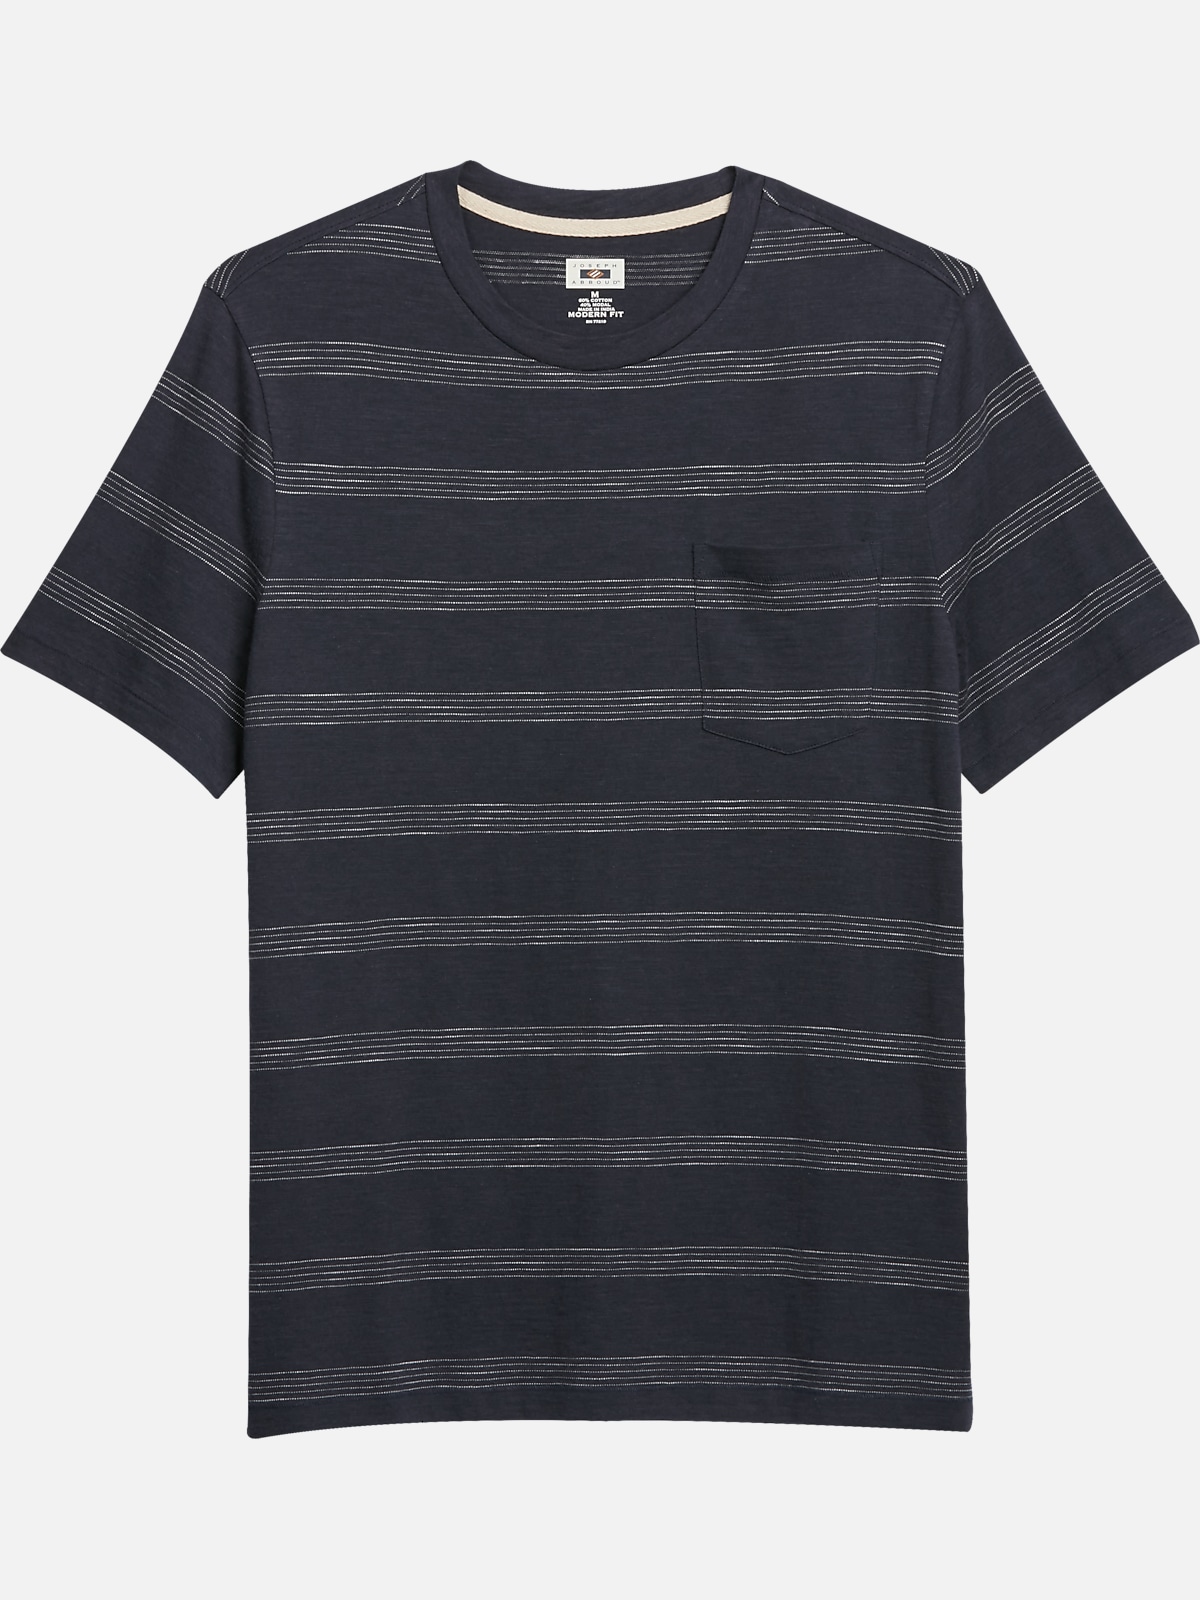 Joseph Abboud Modern Fit Short Sleeve Crew Neck T-Shirt | All Sale| Men ...